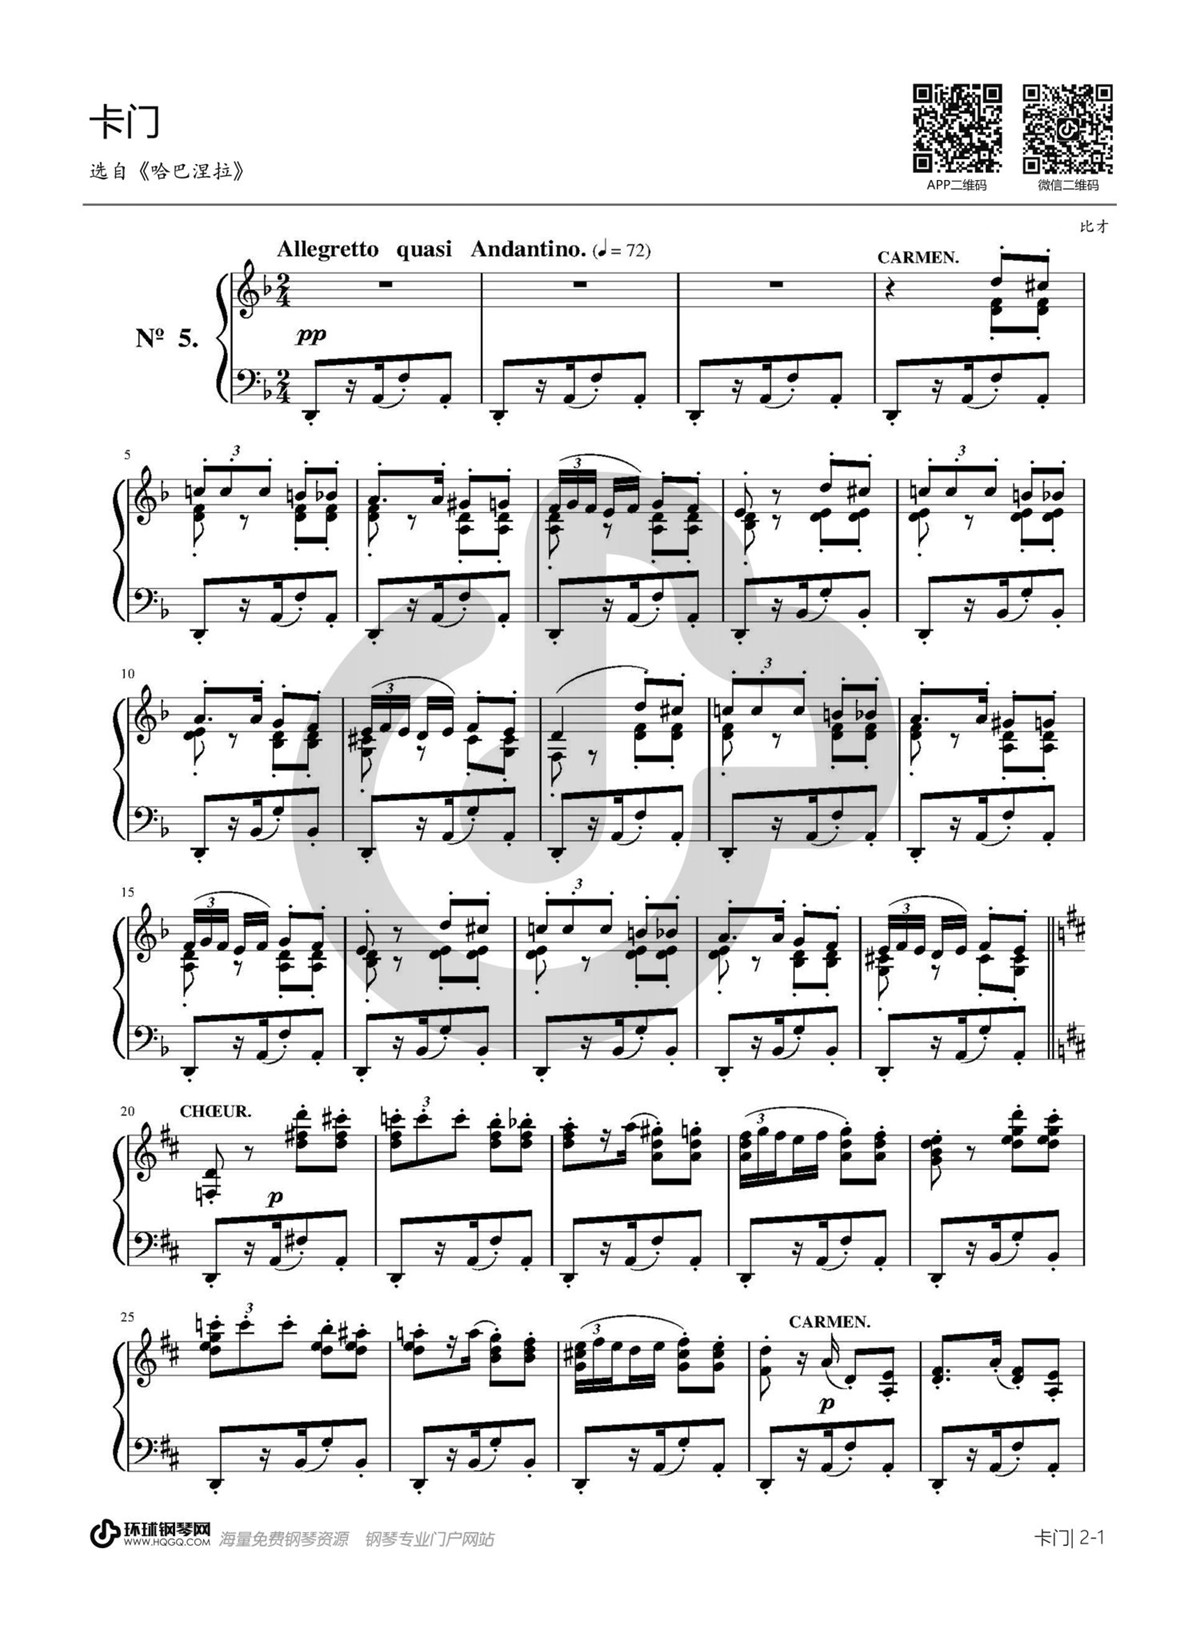 卡门序曲吉他谱(gtp谱,匹克独奏曲,solo)_Georges Bizet(乔治·比才)